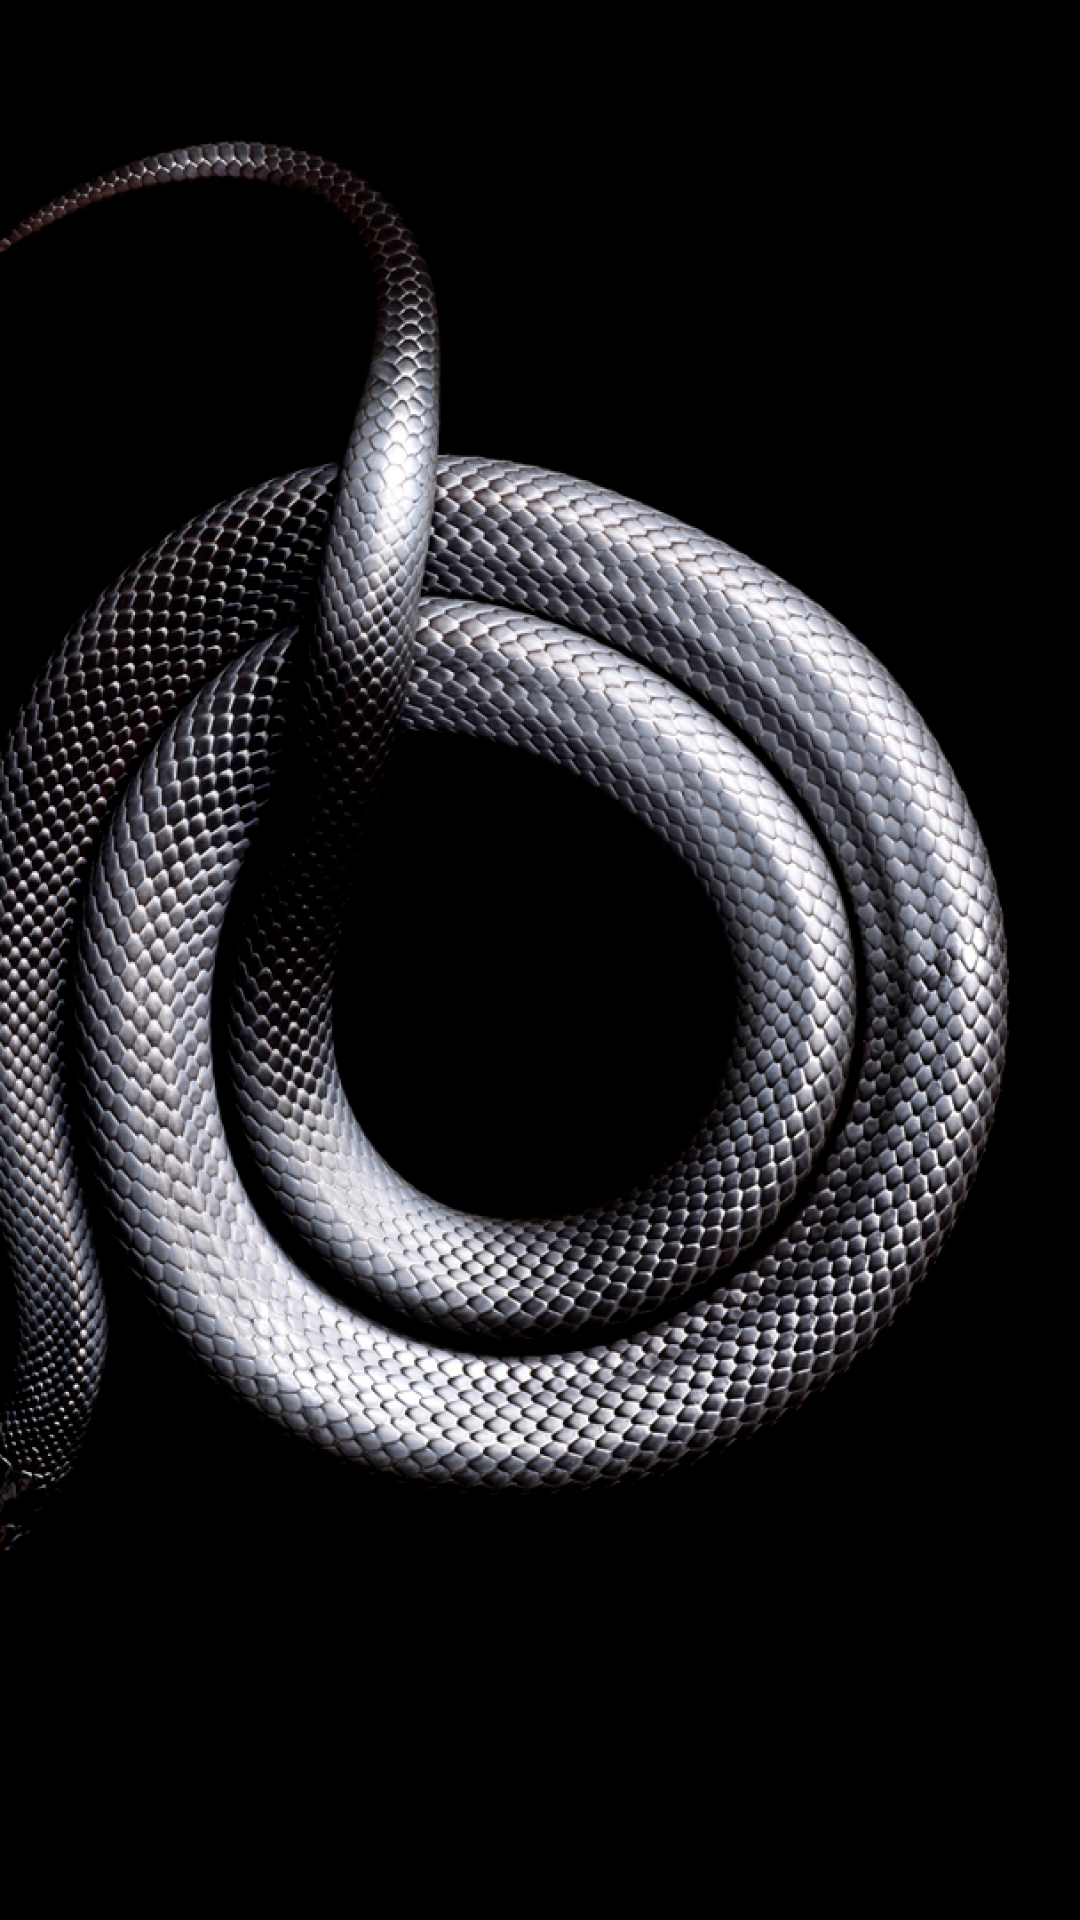 fond d'écran de serpent,serpent,reptile,noir et blanc,métal,photographie de nature morte